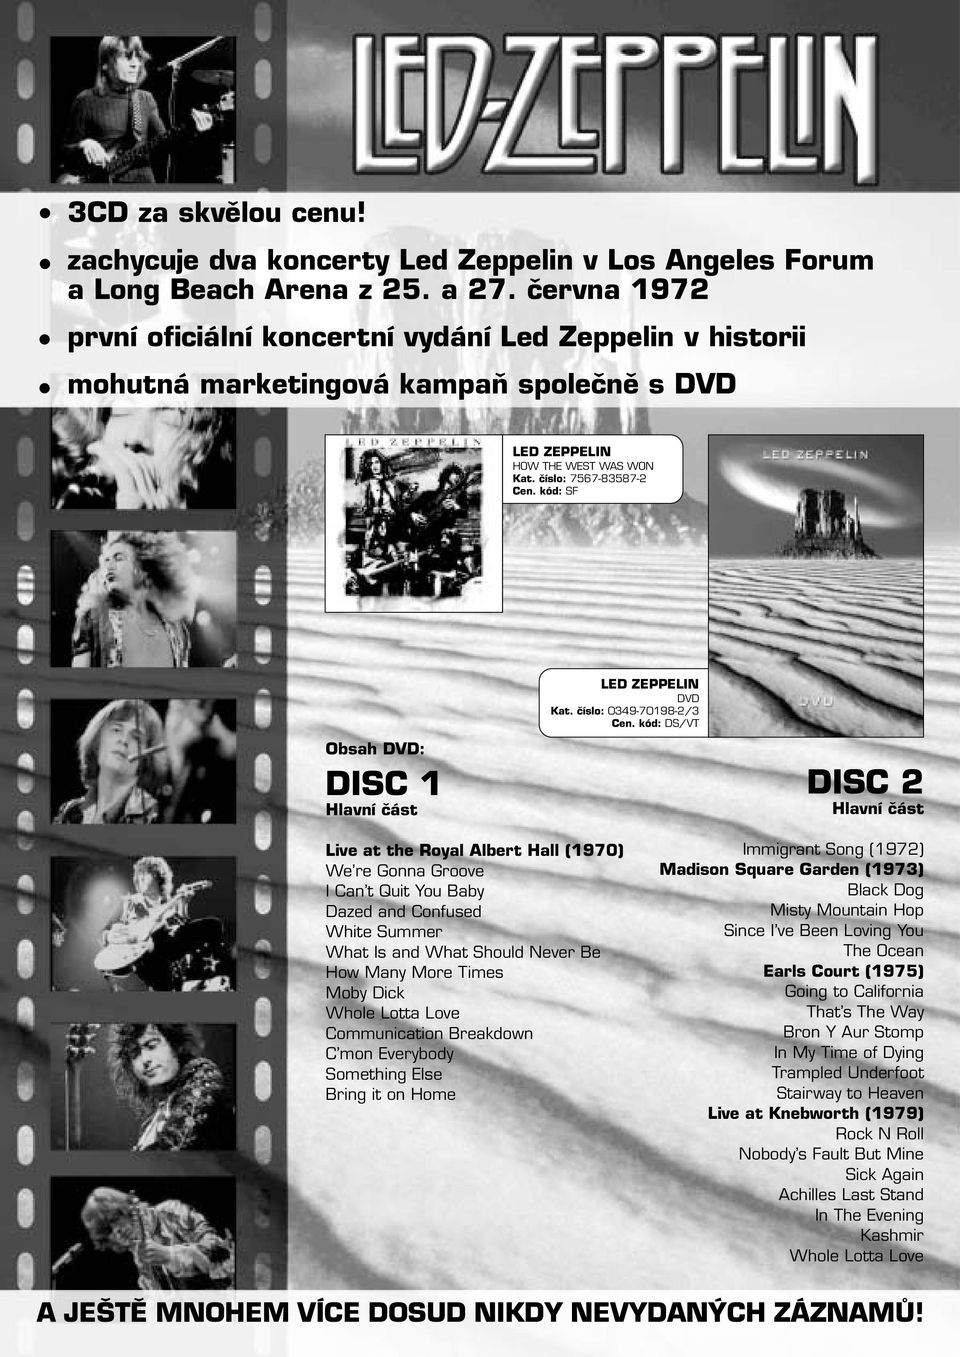 číslo: 7567-83587-2 SF Obsah DVD: DISC 1 Hlavní část LED ZEPPELIN DVD Kat.